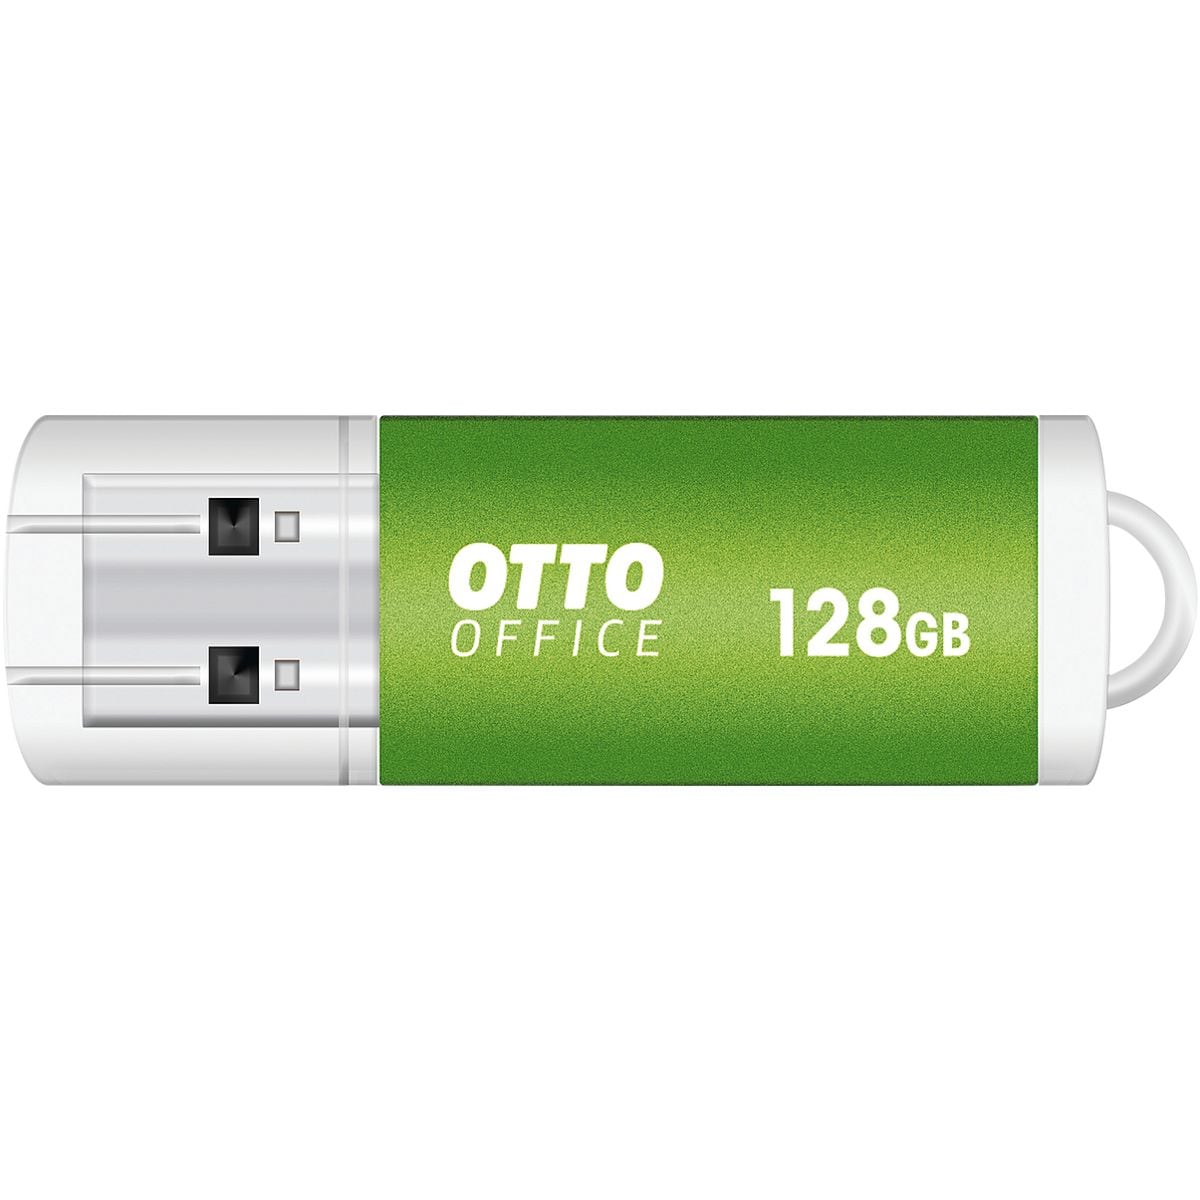 Cl USB 128 GB OTTO Office Premium premium USB 2.0